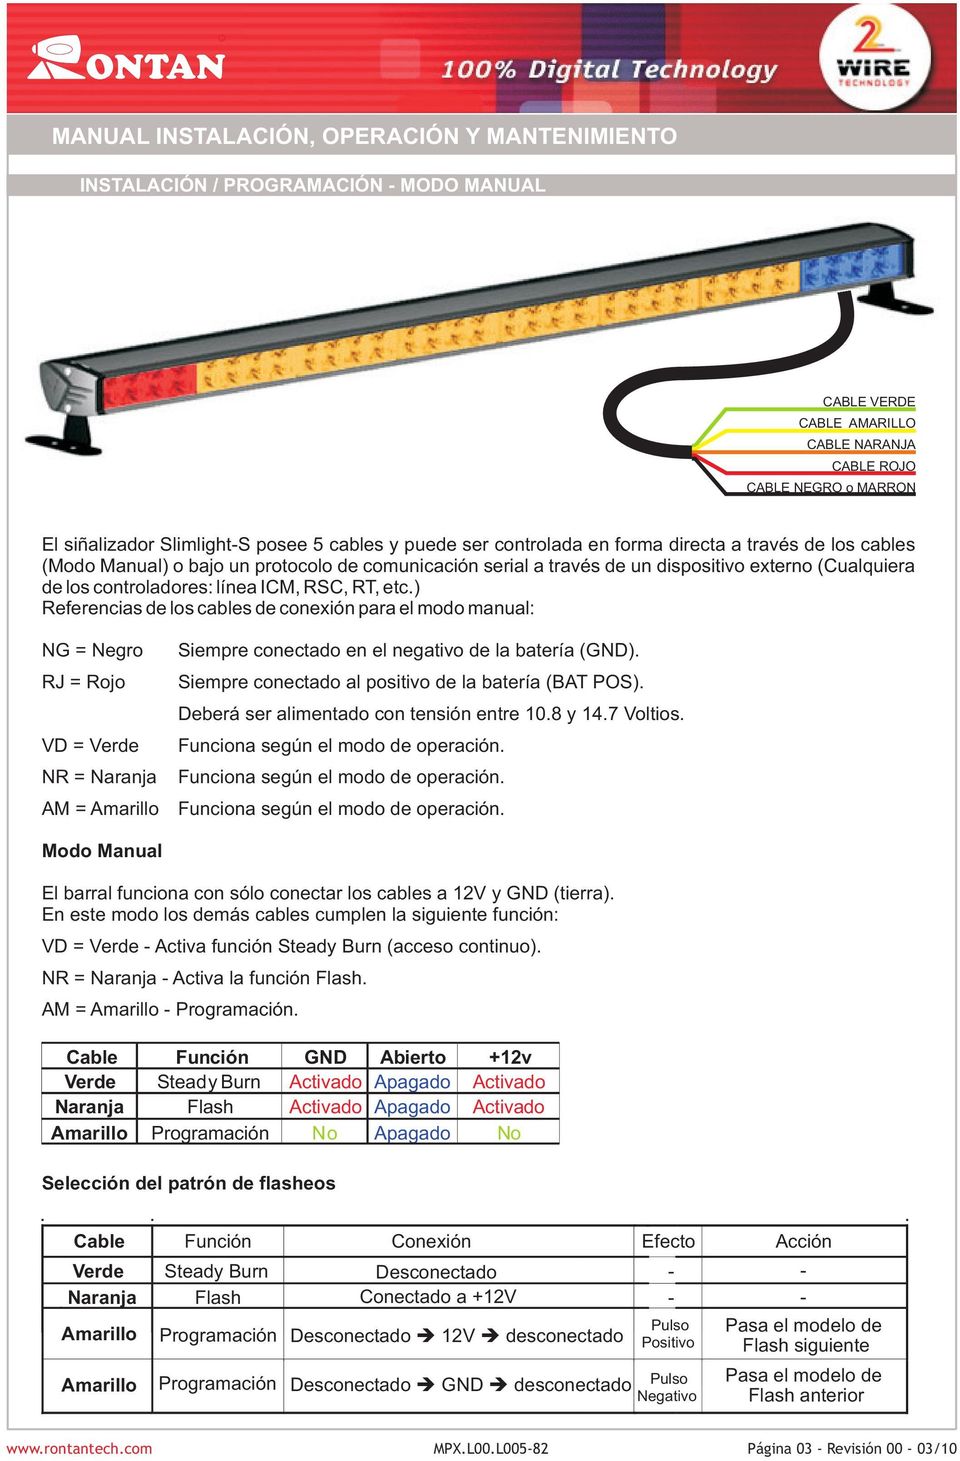 ) Referencias de los cables de conexión para el modo manual: NG = Negro RJ = Rojo VD = Verde NR = Naranja AM = Siempre conectado en el negativo de la batería (GND).